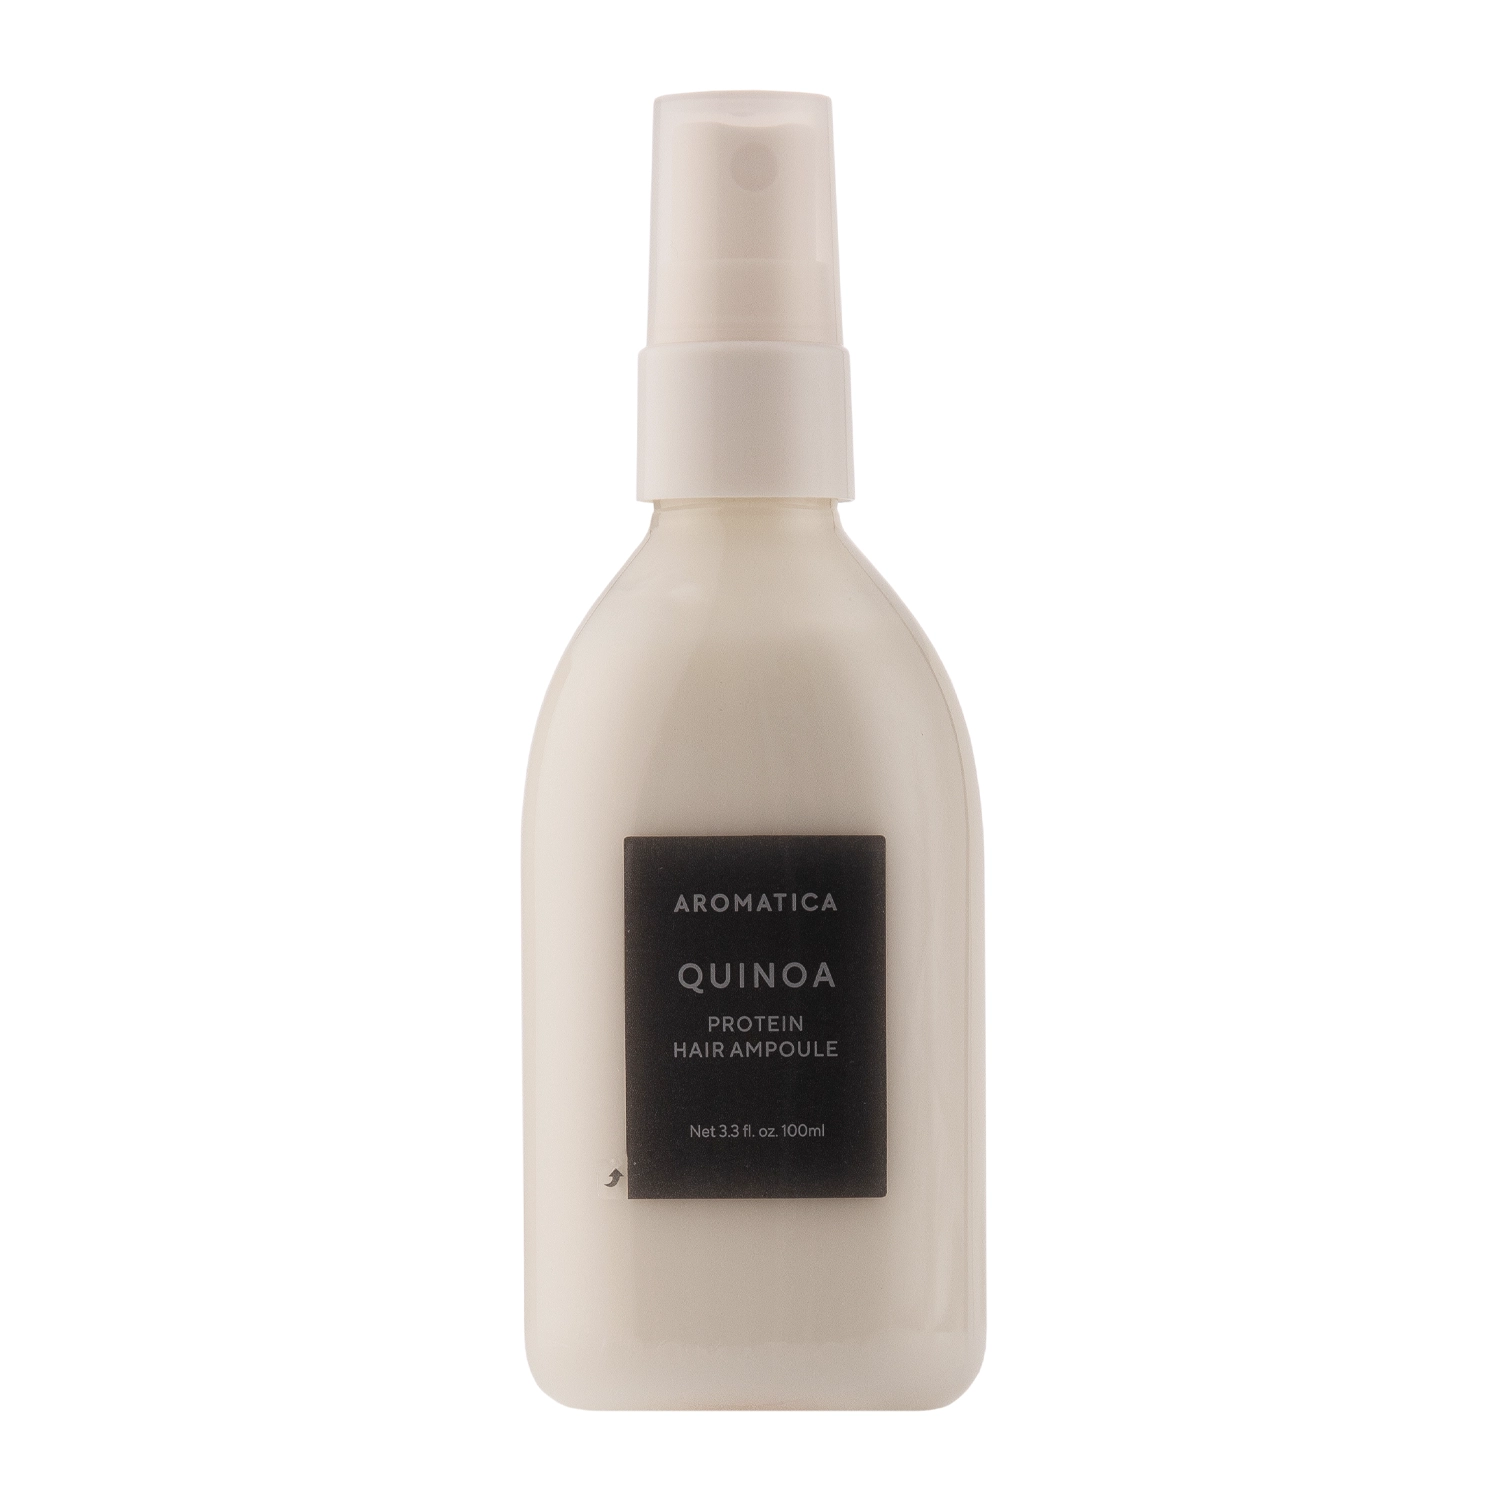 Aromatica - Quinoa Protein Hair Ampoule - Proteinowa Ampułka do Włosów - 100ml